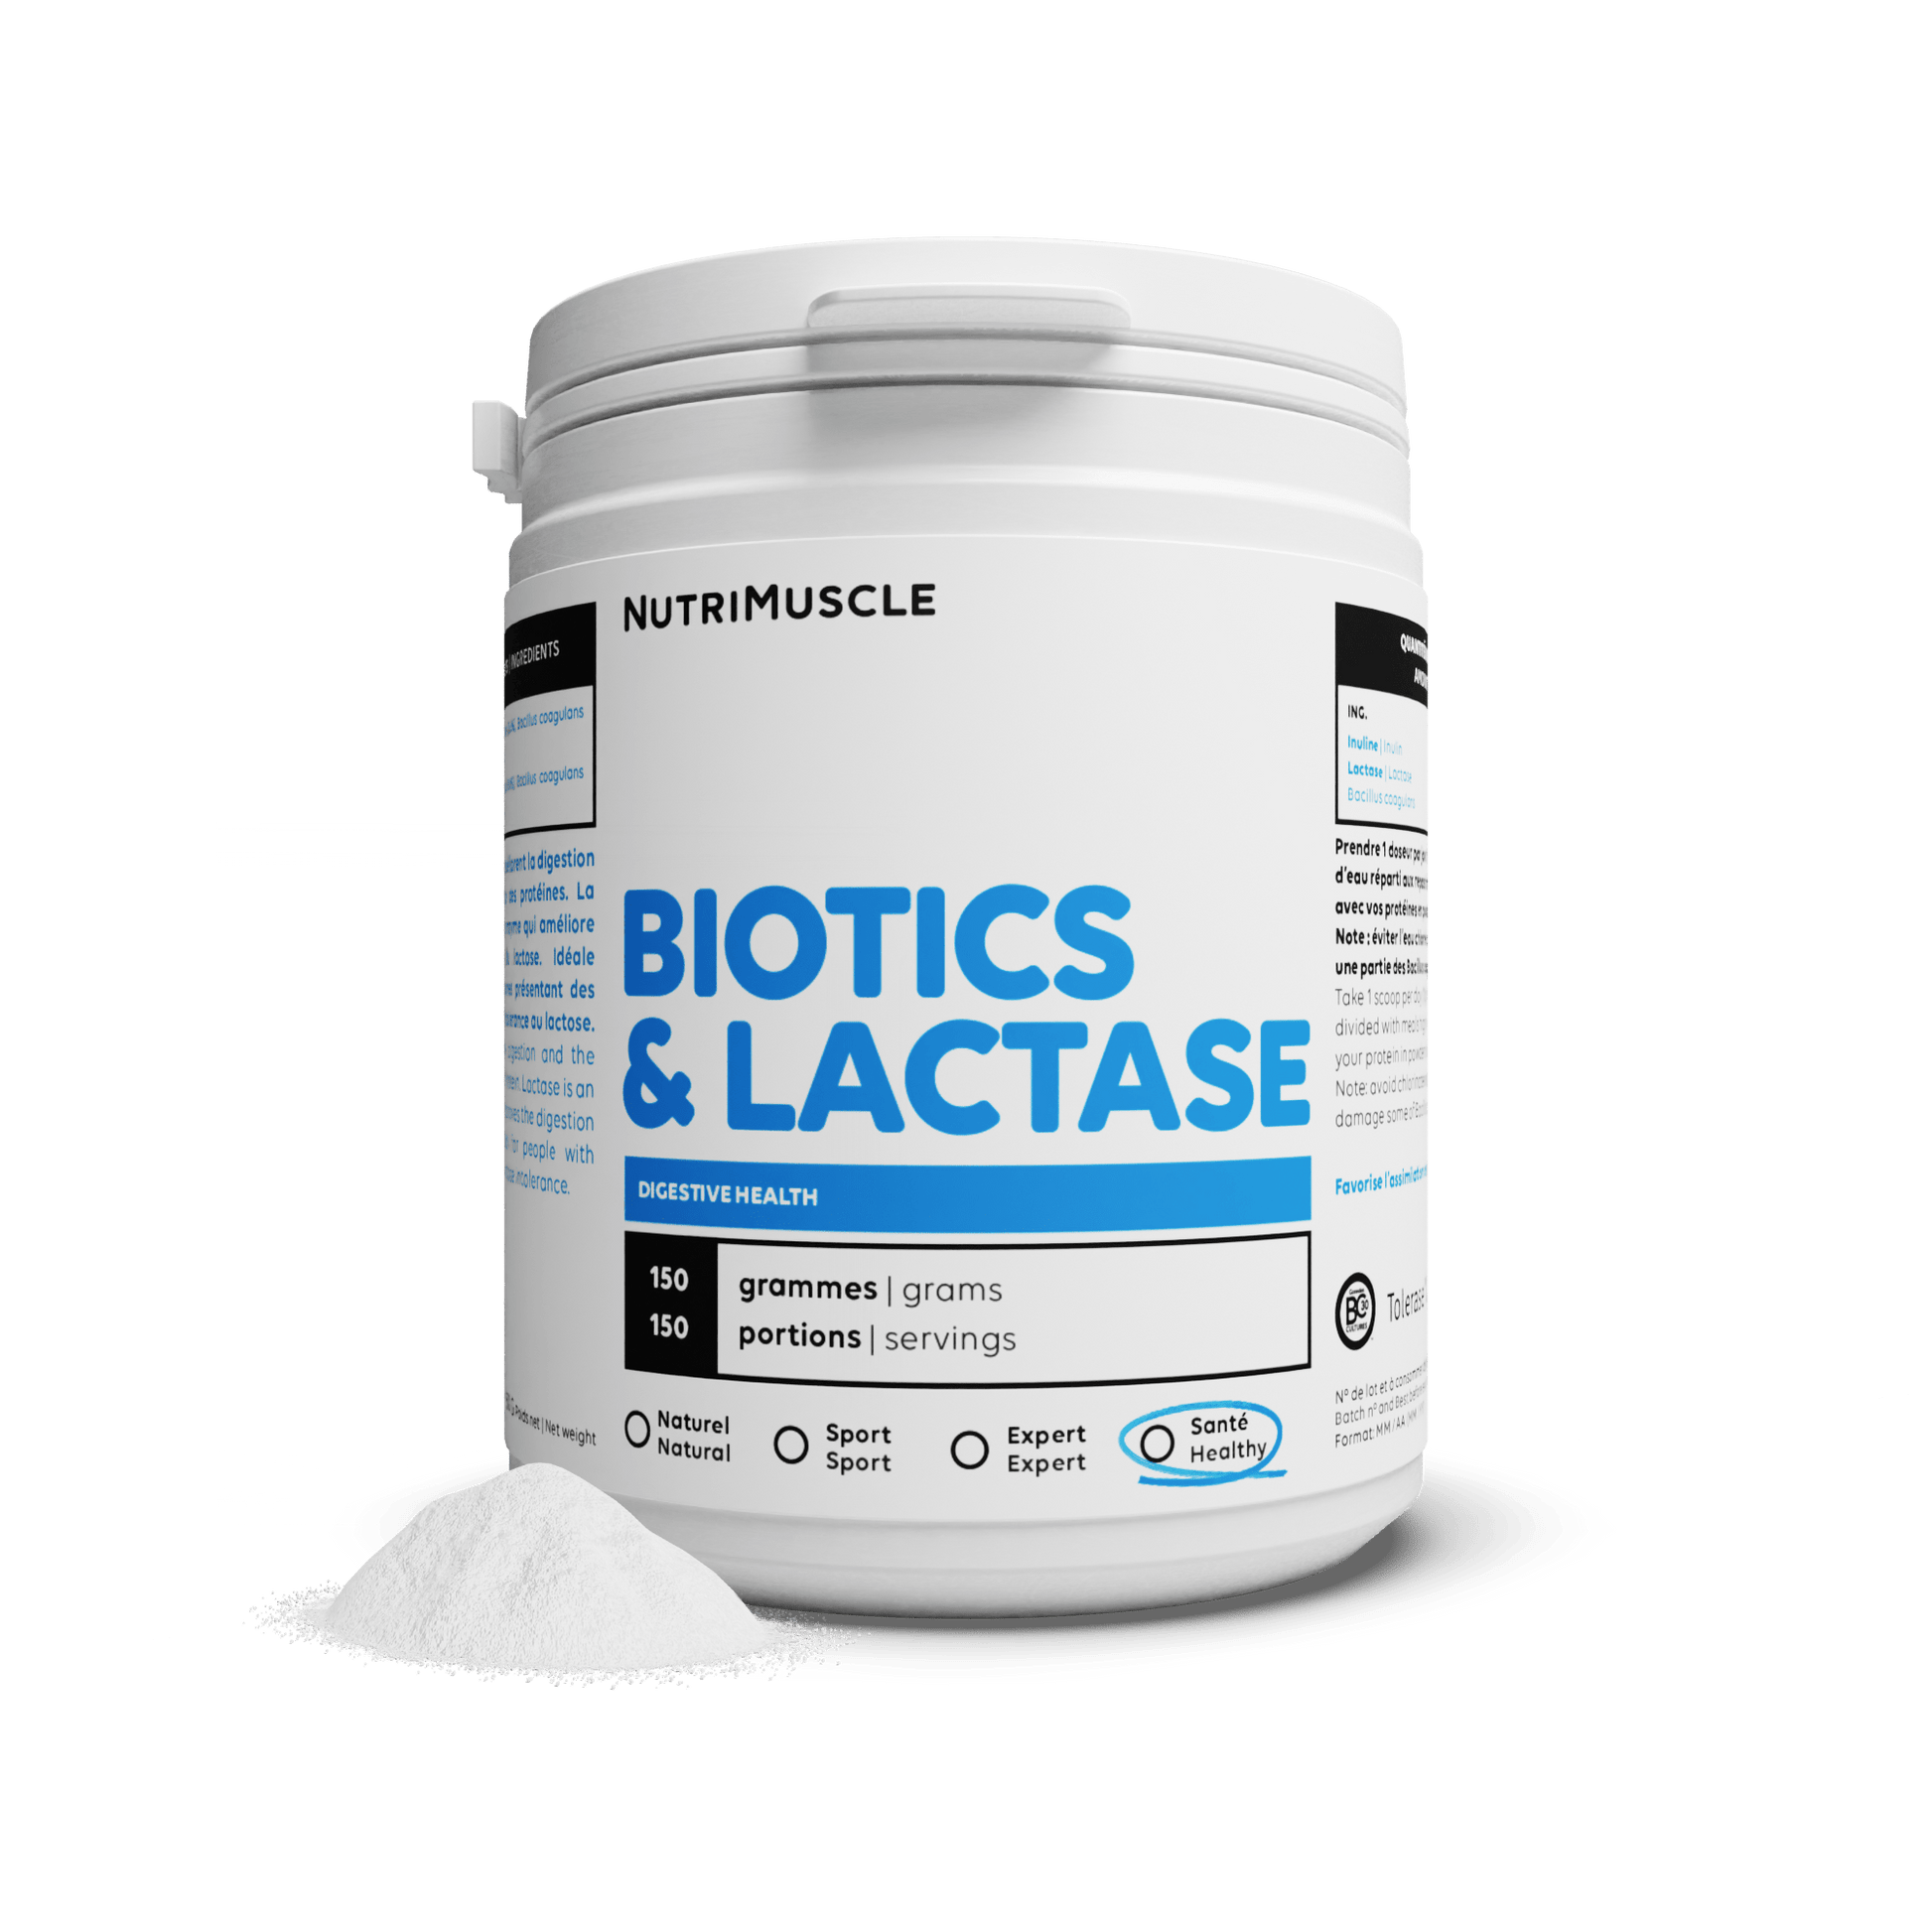 Nutrimuscle Nutriments Avec lactase / 150 g Biotiques